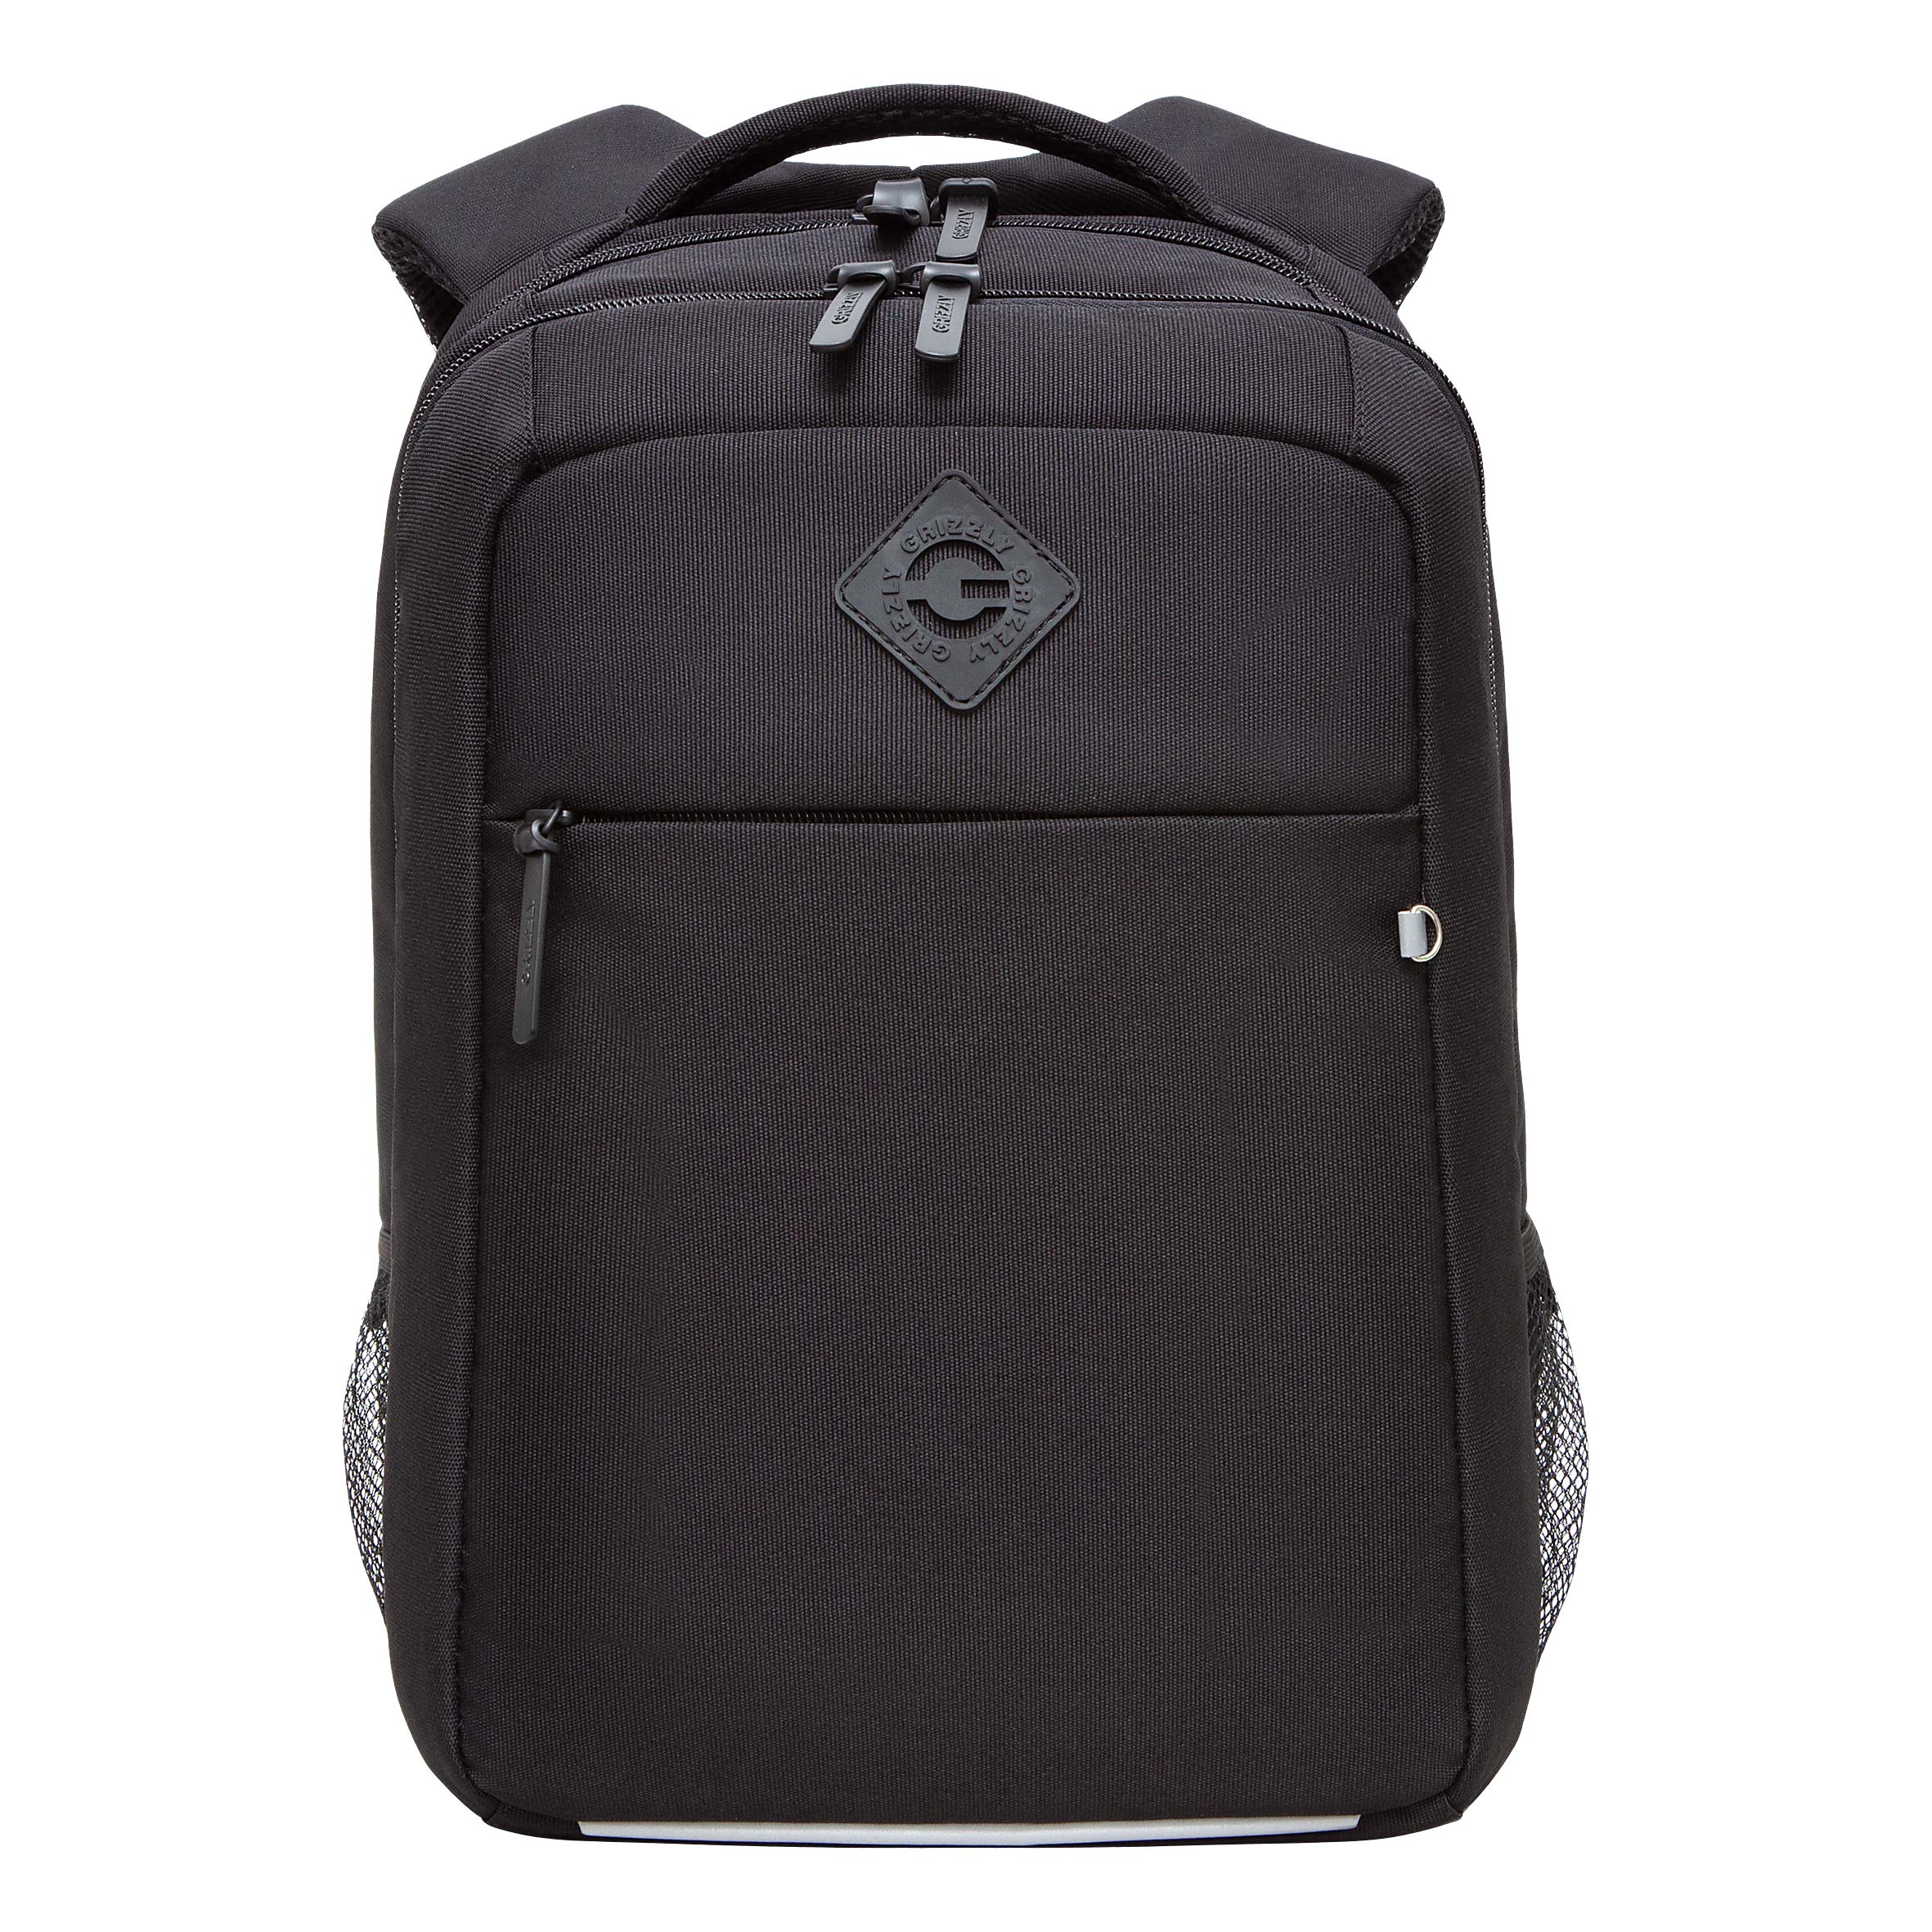 Рюкзак GRIZZLY с карманом для ноутбука 13, анатомический, для мальчика RB-456-11